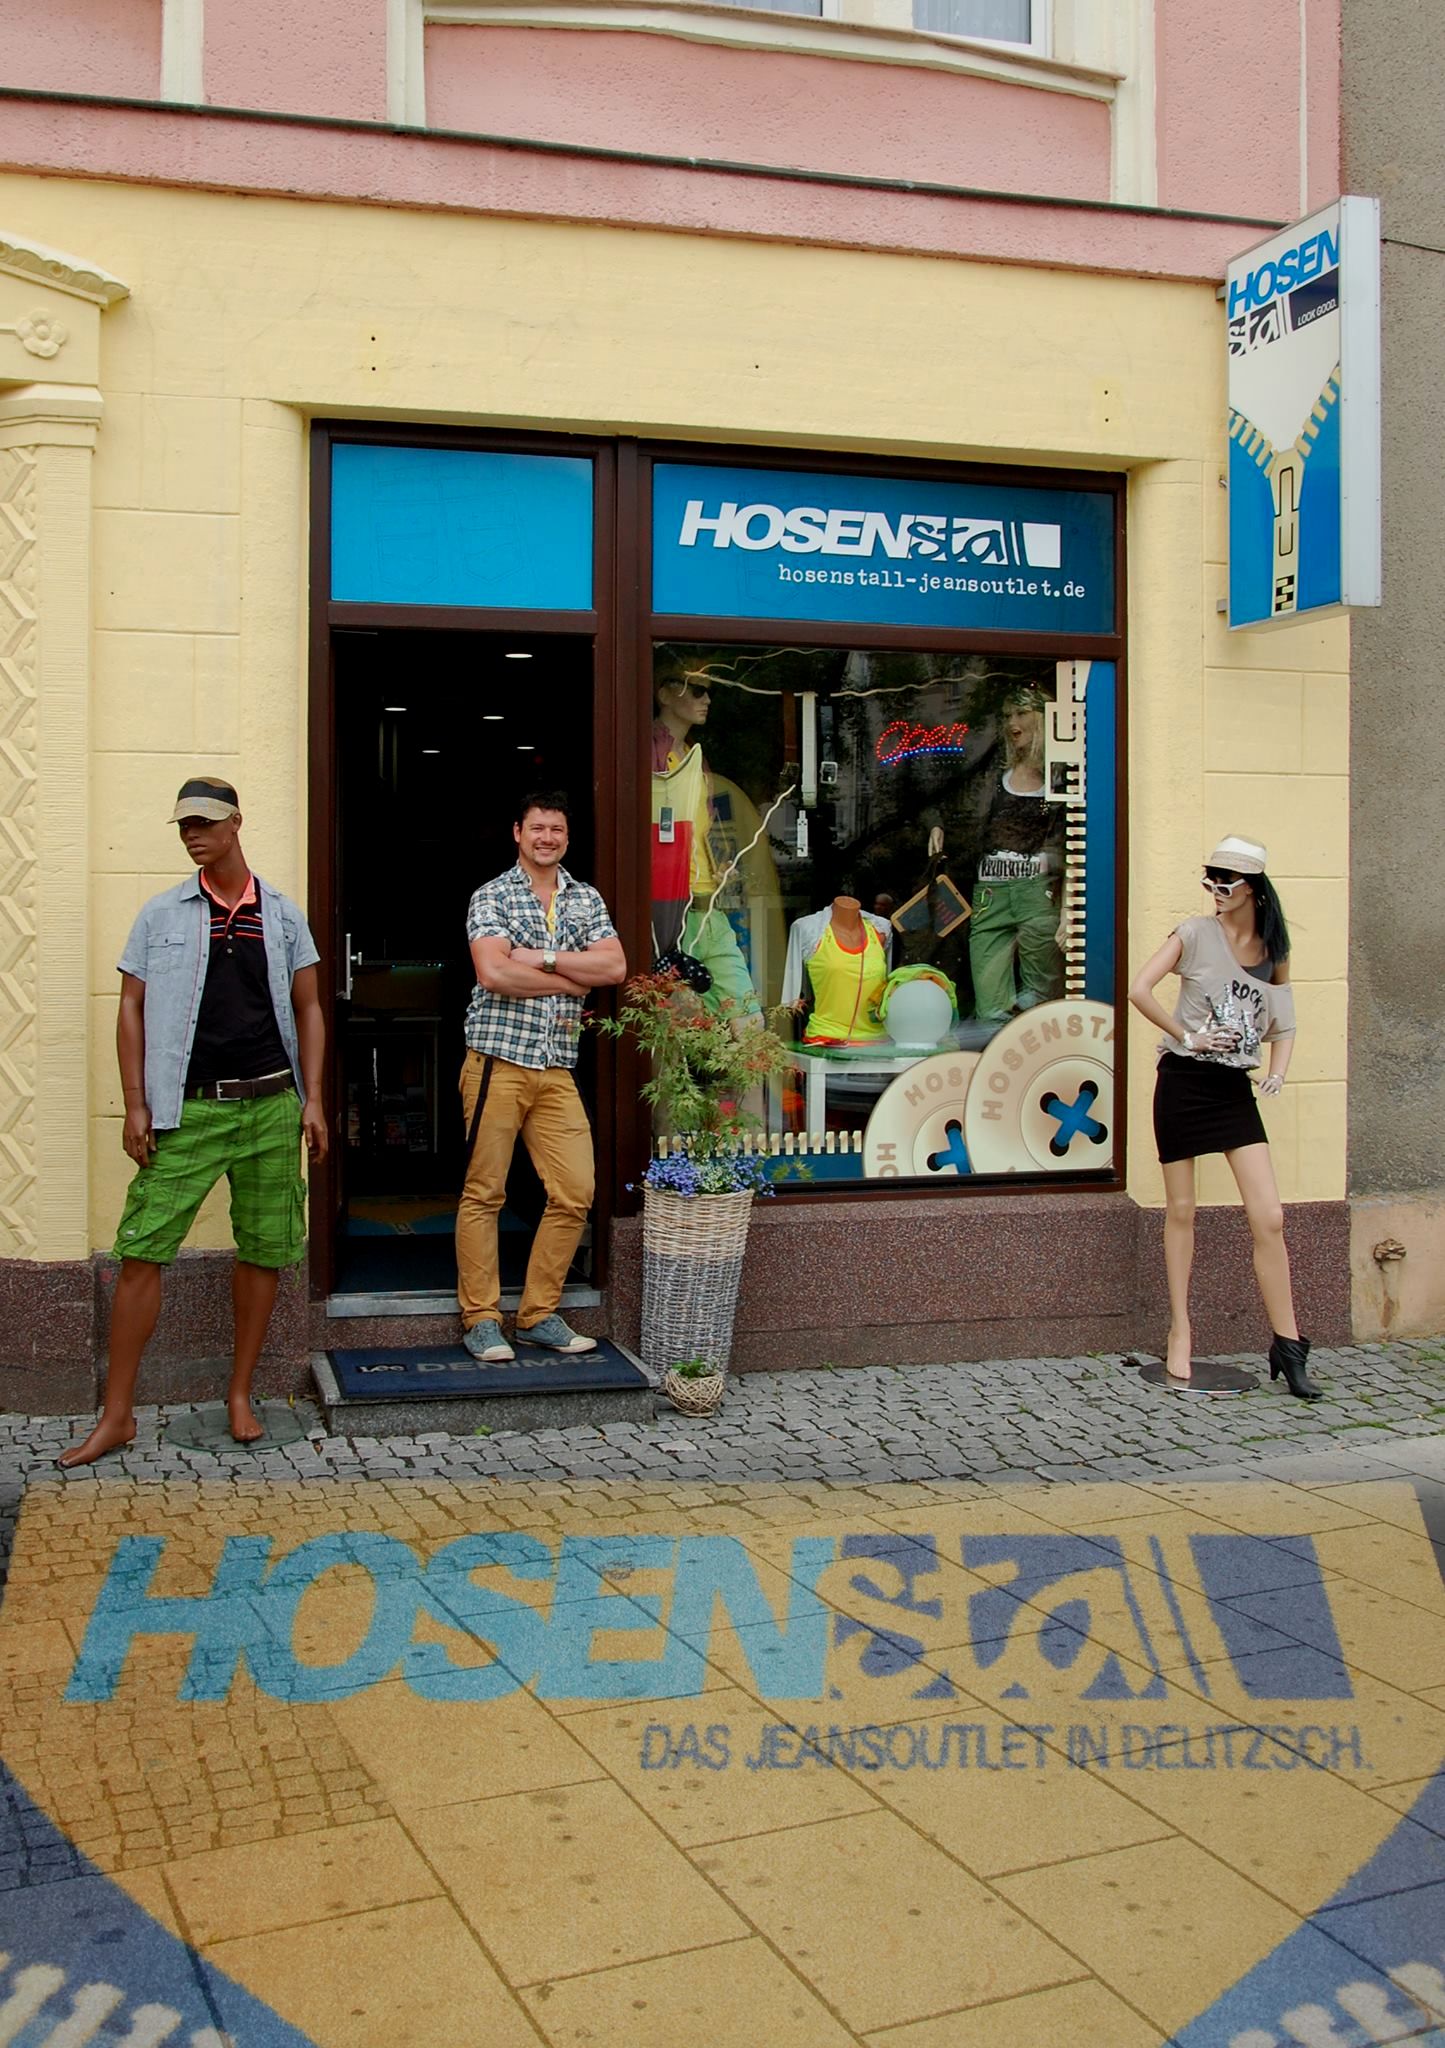 HOSENSTALL